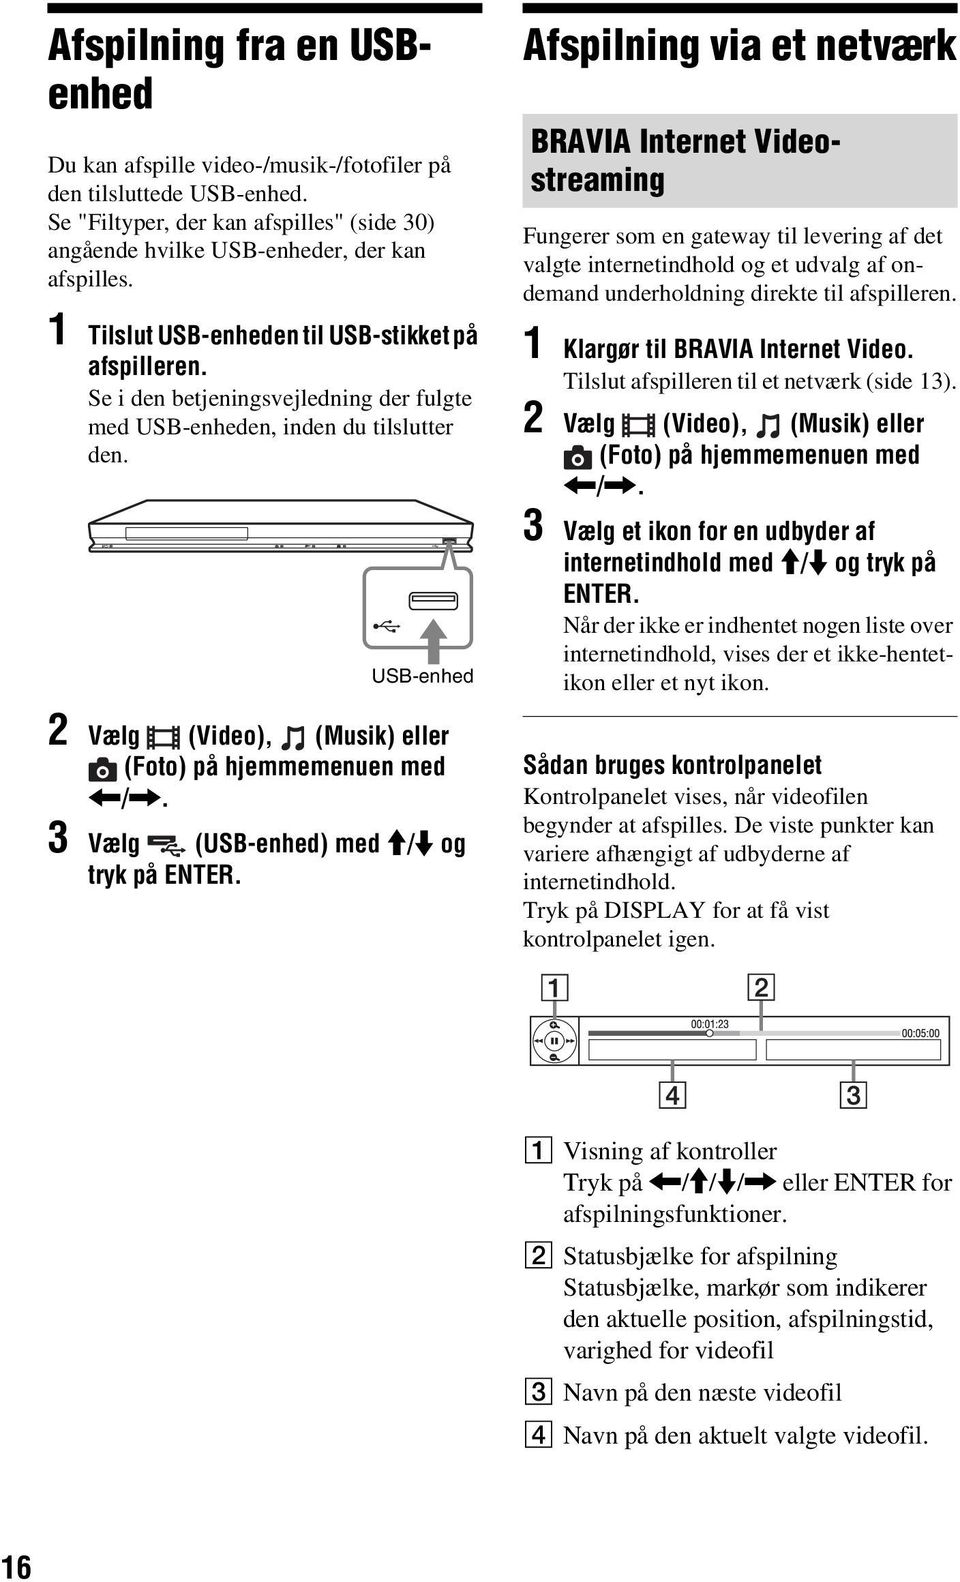 USB-enhed 2 Vælg (Video), (Musik) eller (Foto) på hjemmemenuen med </,. 3 Vælg (USB-enhed) med M/m og tryk på ENTER.